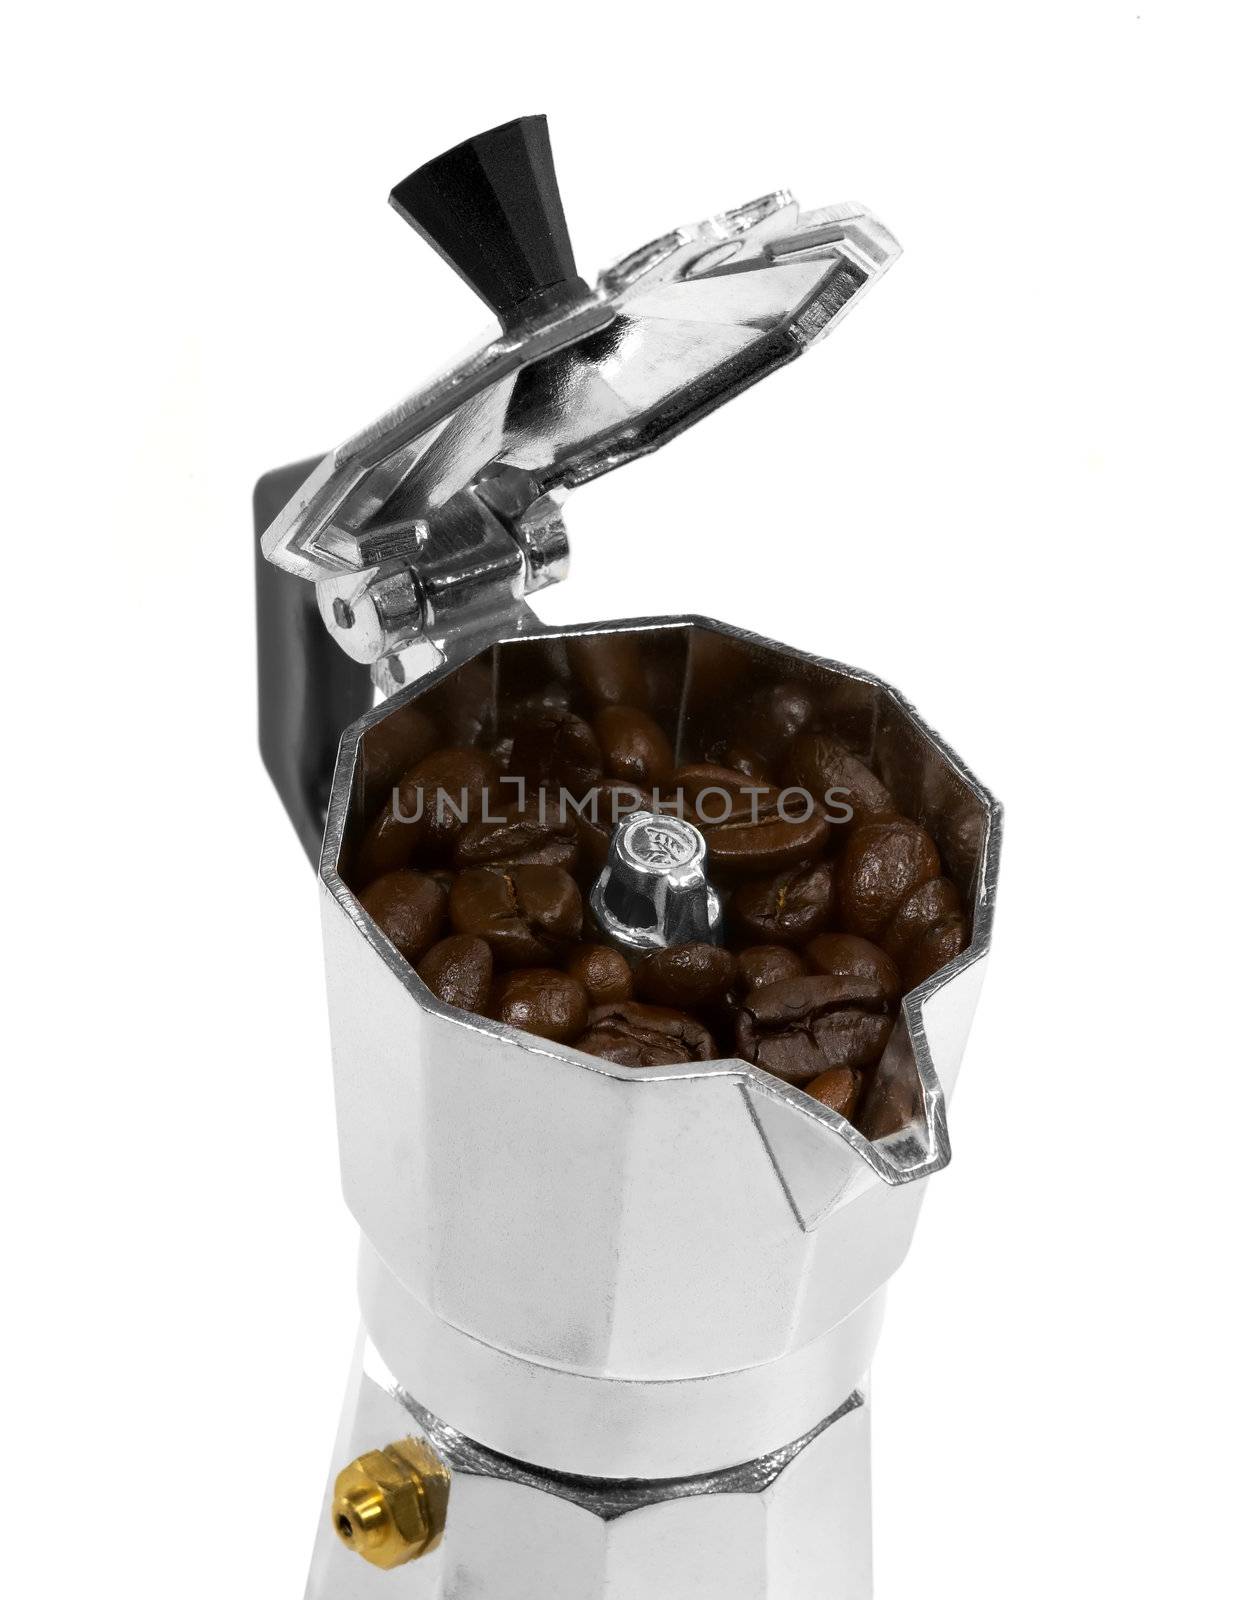 coffee beans and mocha machine by keko64